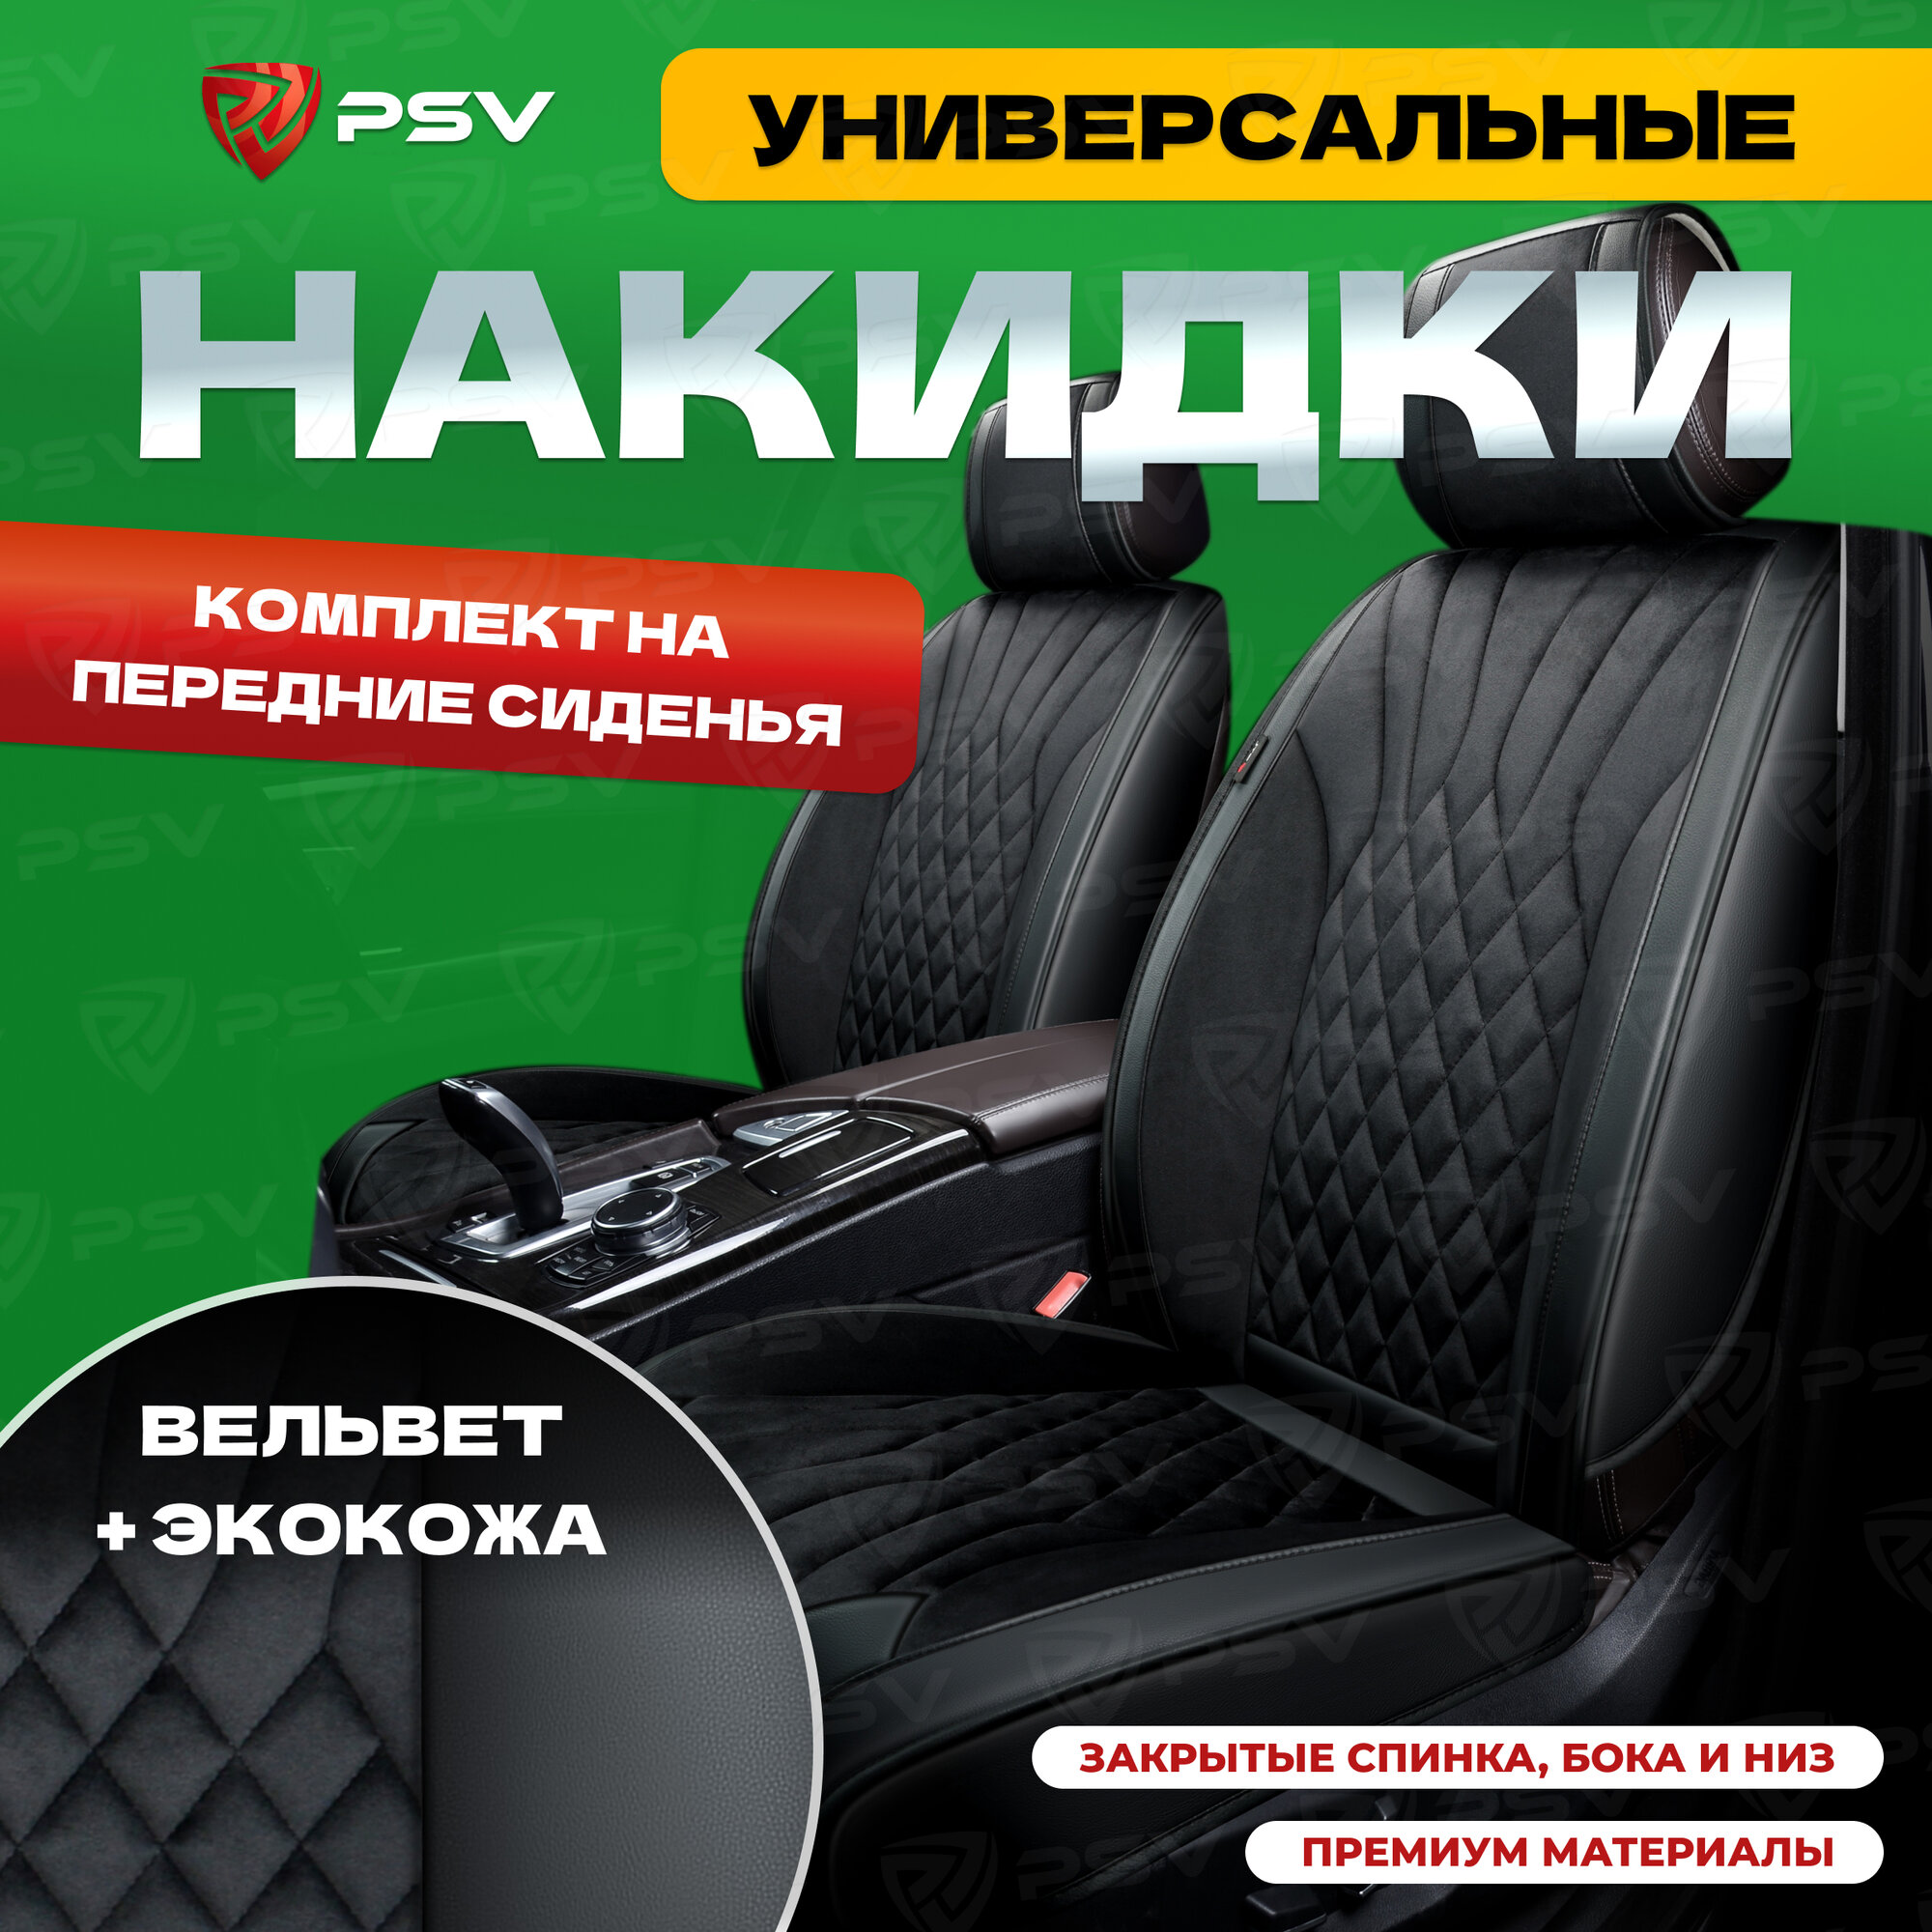 Накидки универсальные на машину 3D PSV Galaxy (Черный с черный строчкой) экокожа + вельвет, на передние сиденья, 136242